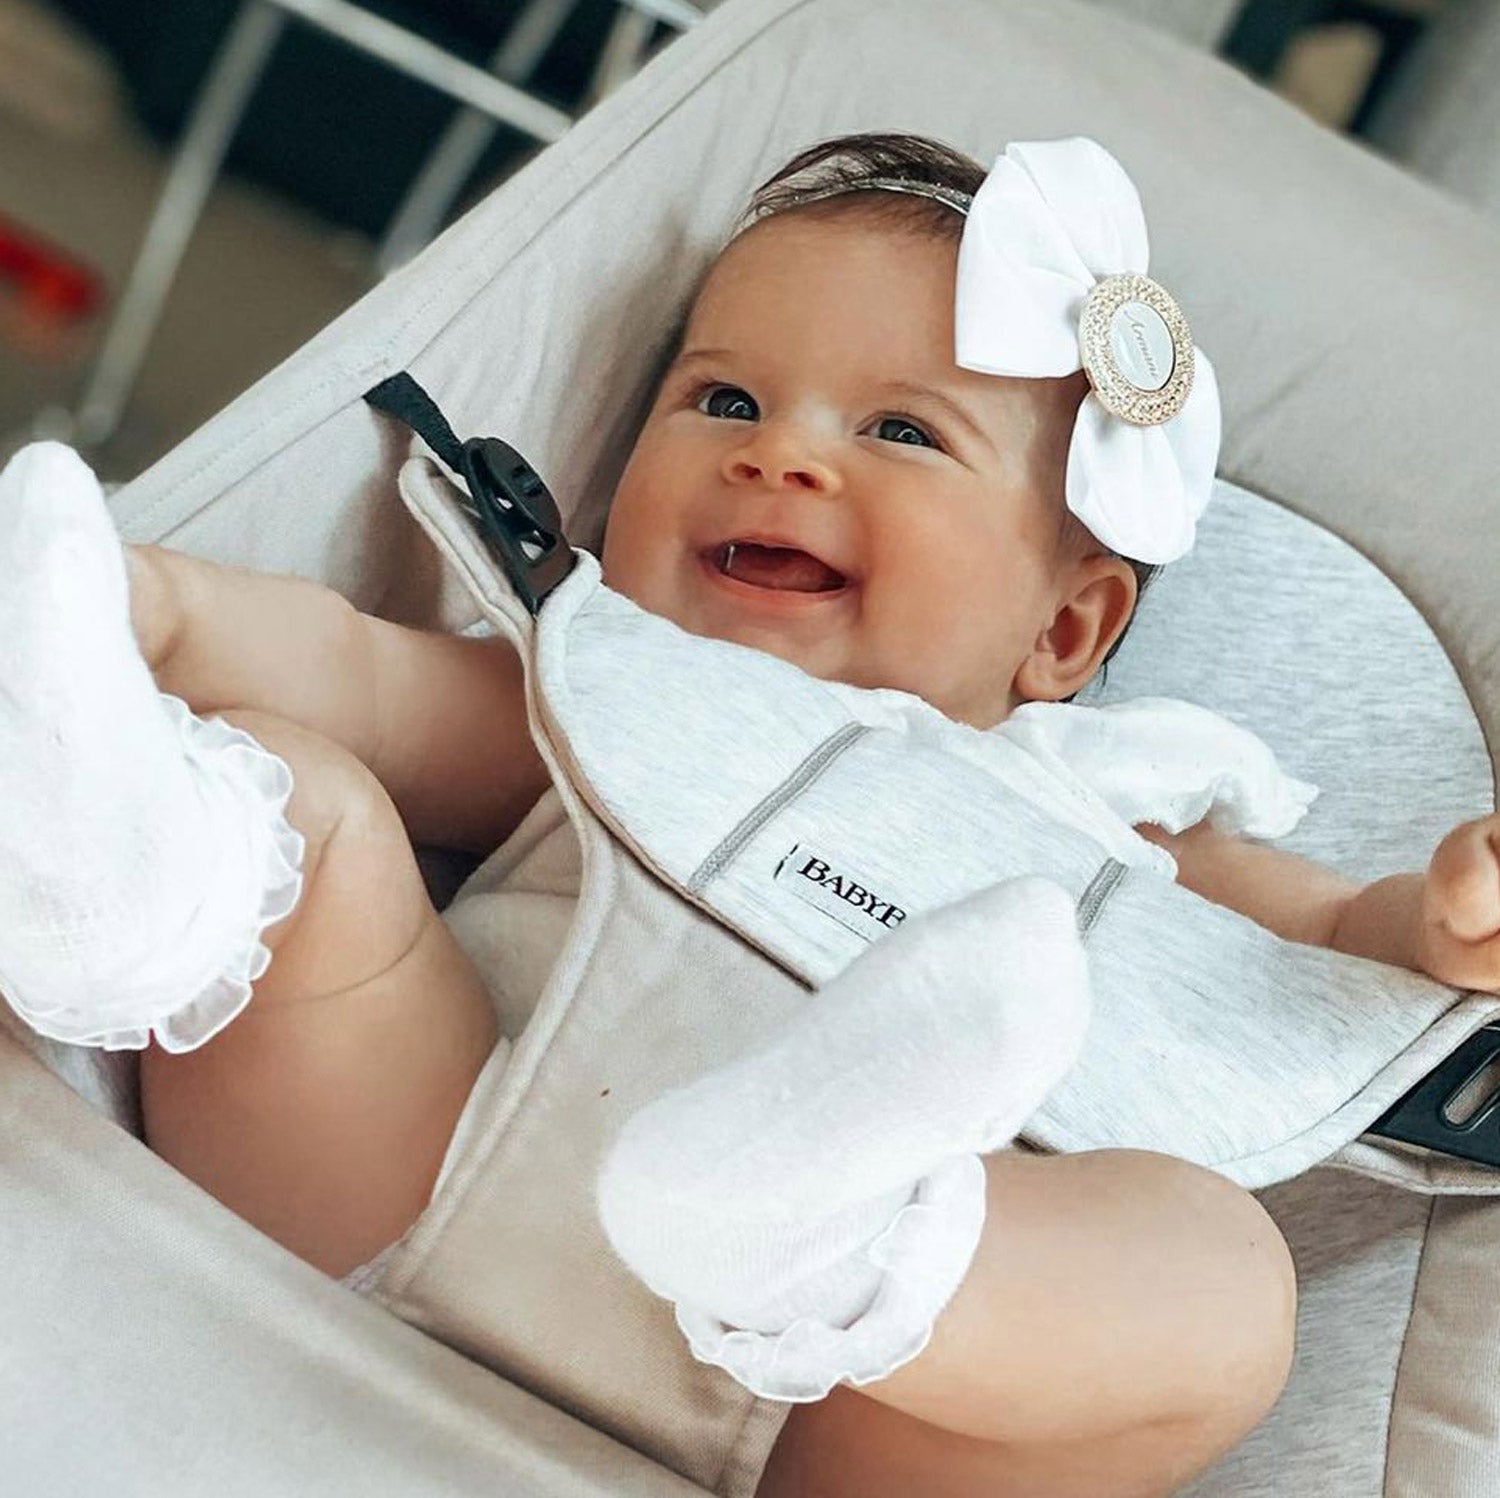 Personalized headband with baby's name, custom newborn gift - white